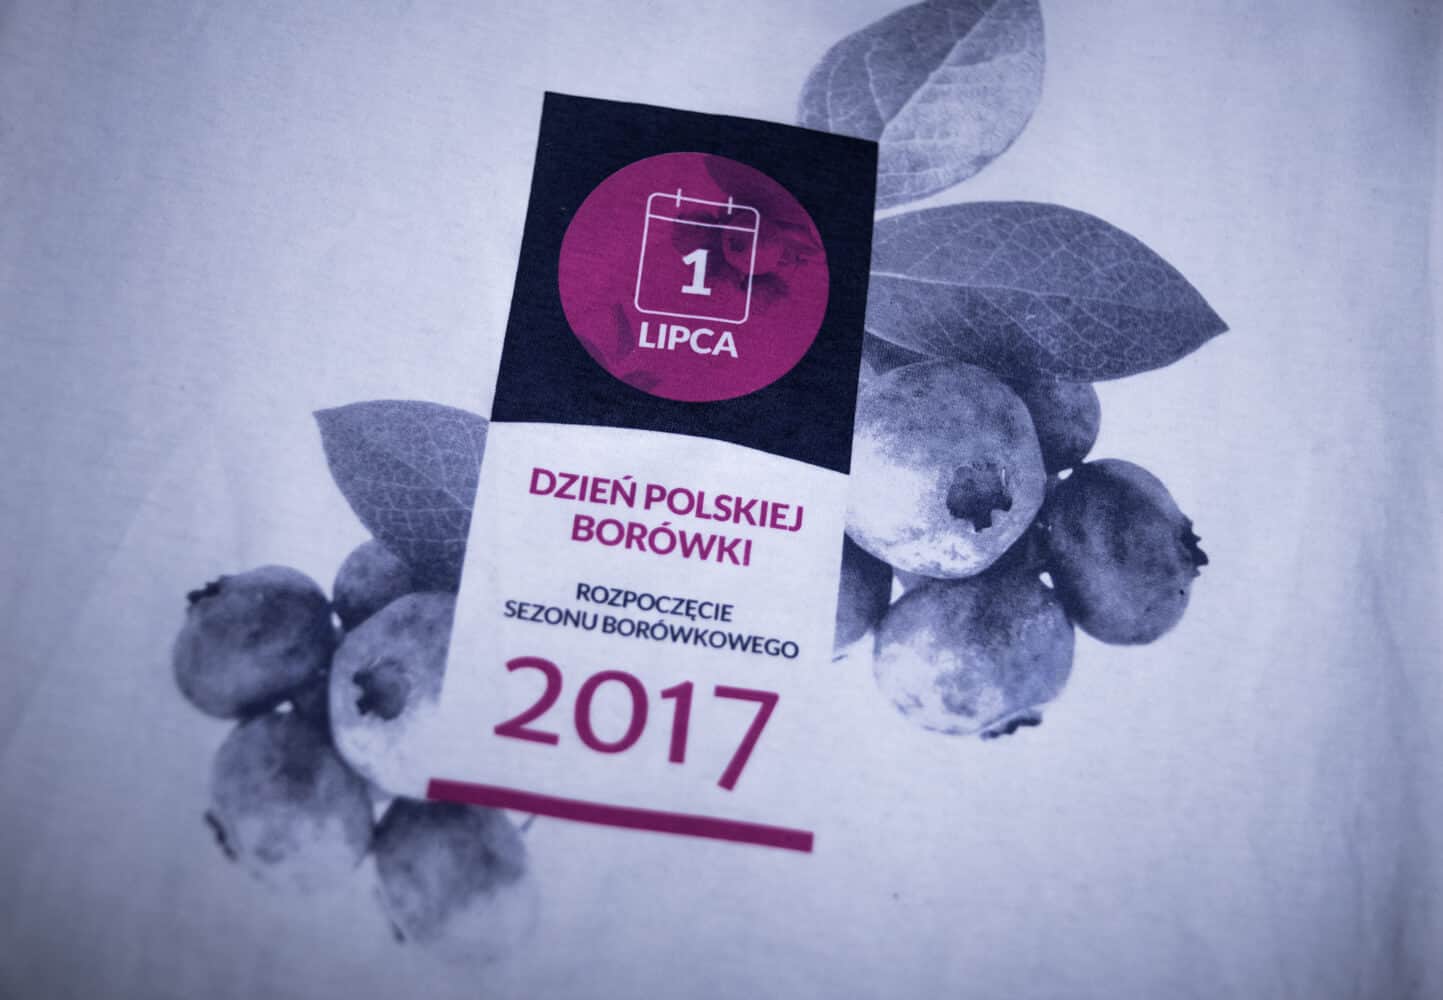 Dzień polskiej borówki 2017